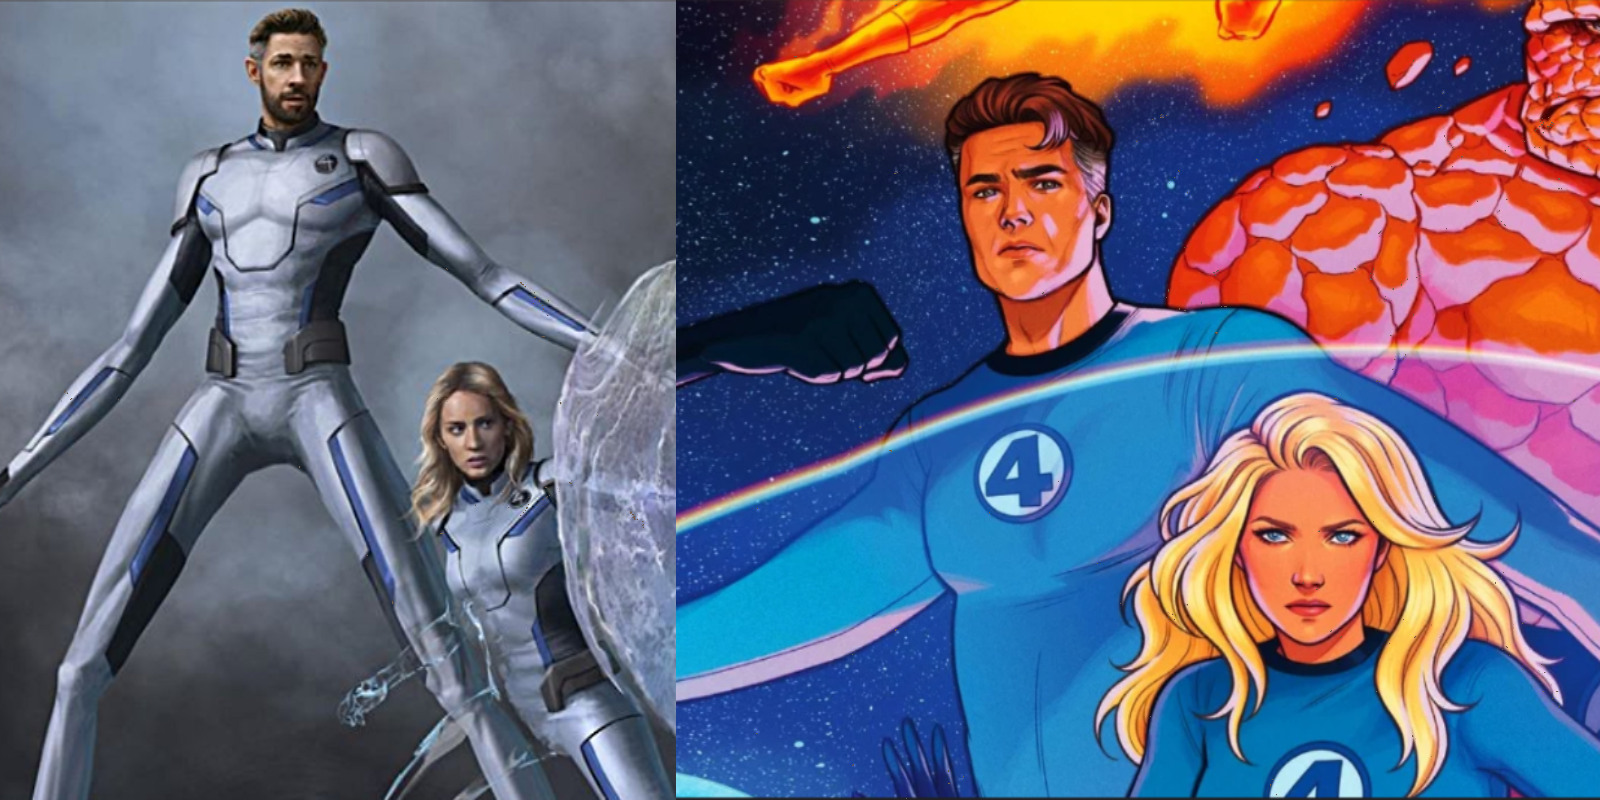 John Krasinski and Emily Blunt Fantastic Four artwork